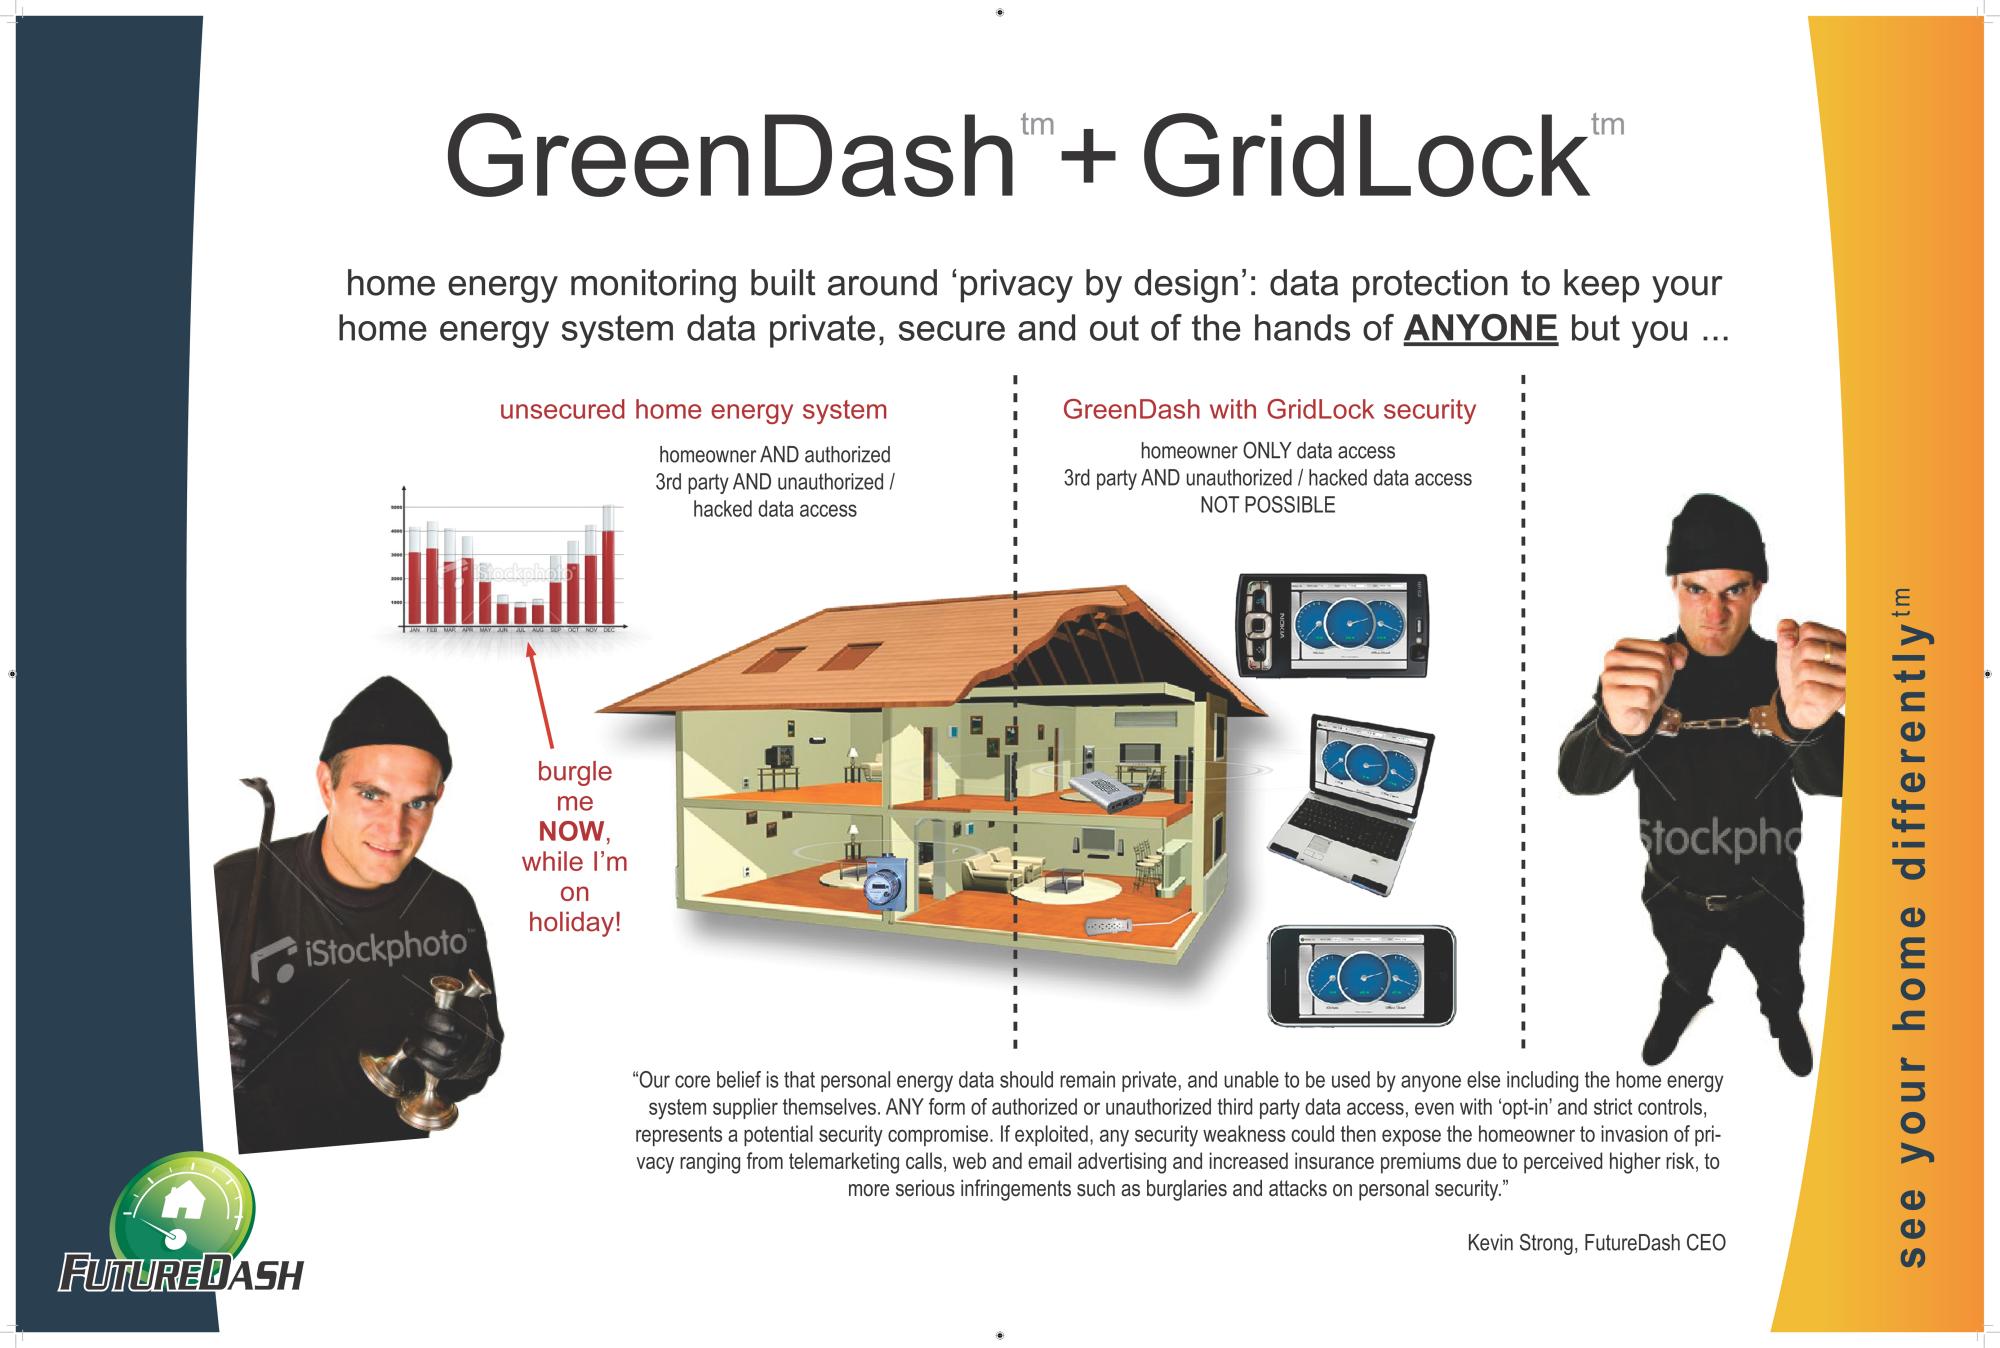 FutureDash - Poster Grid Lock